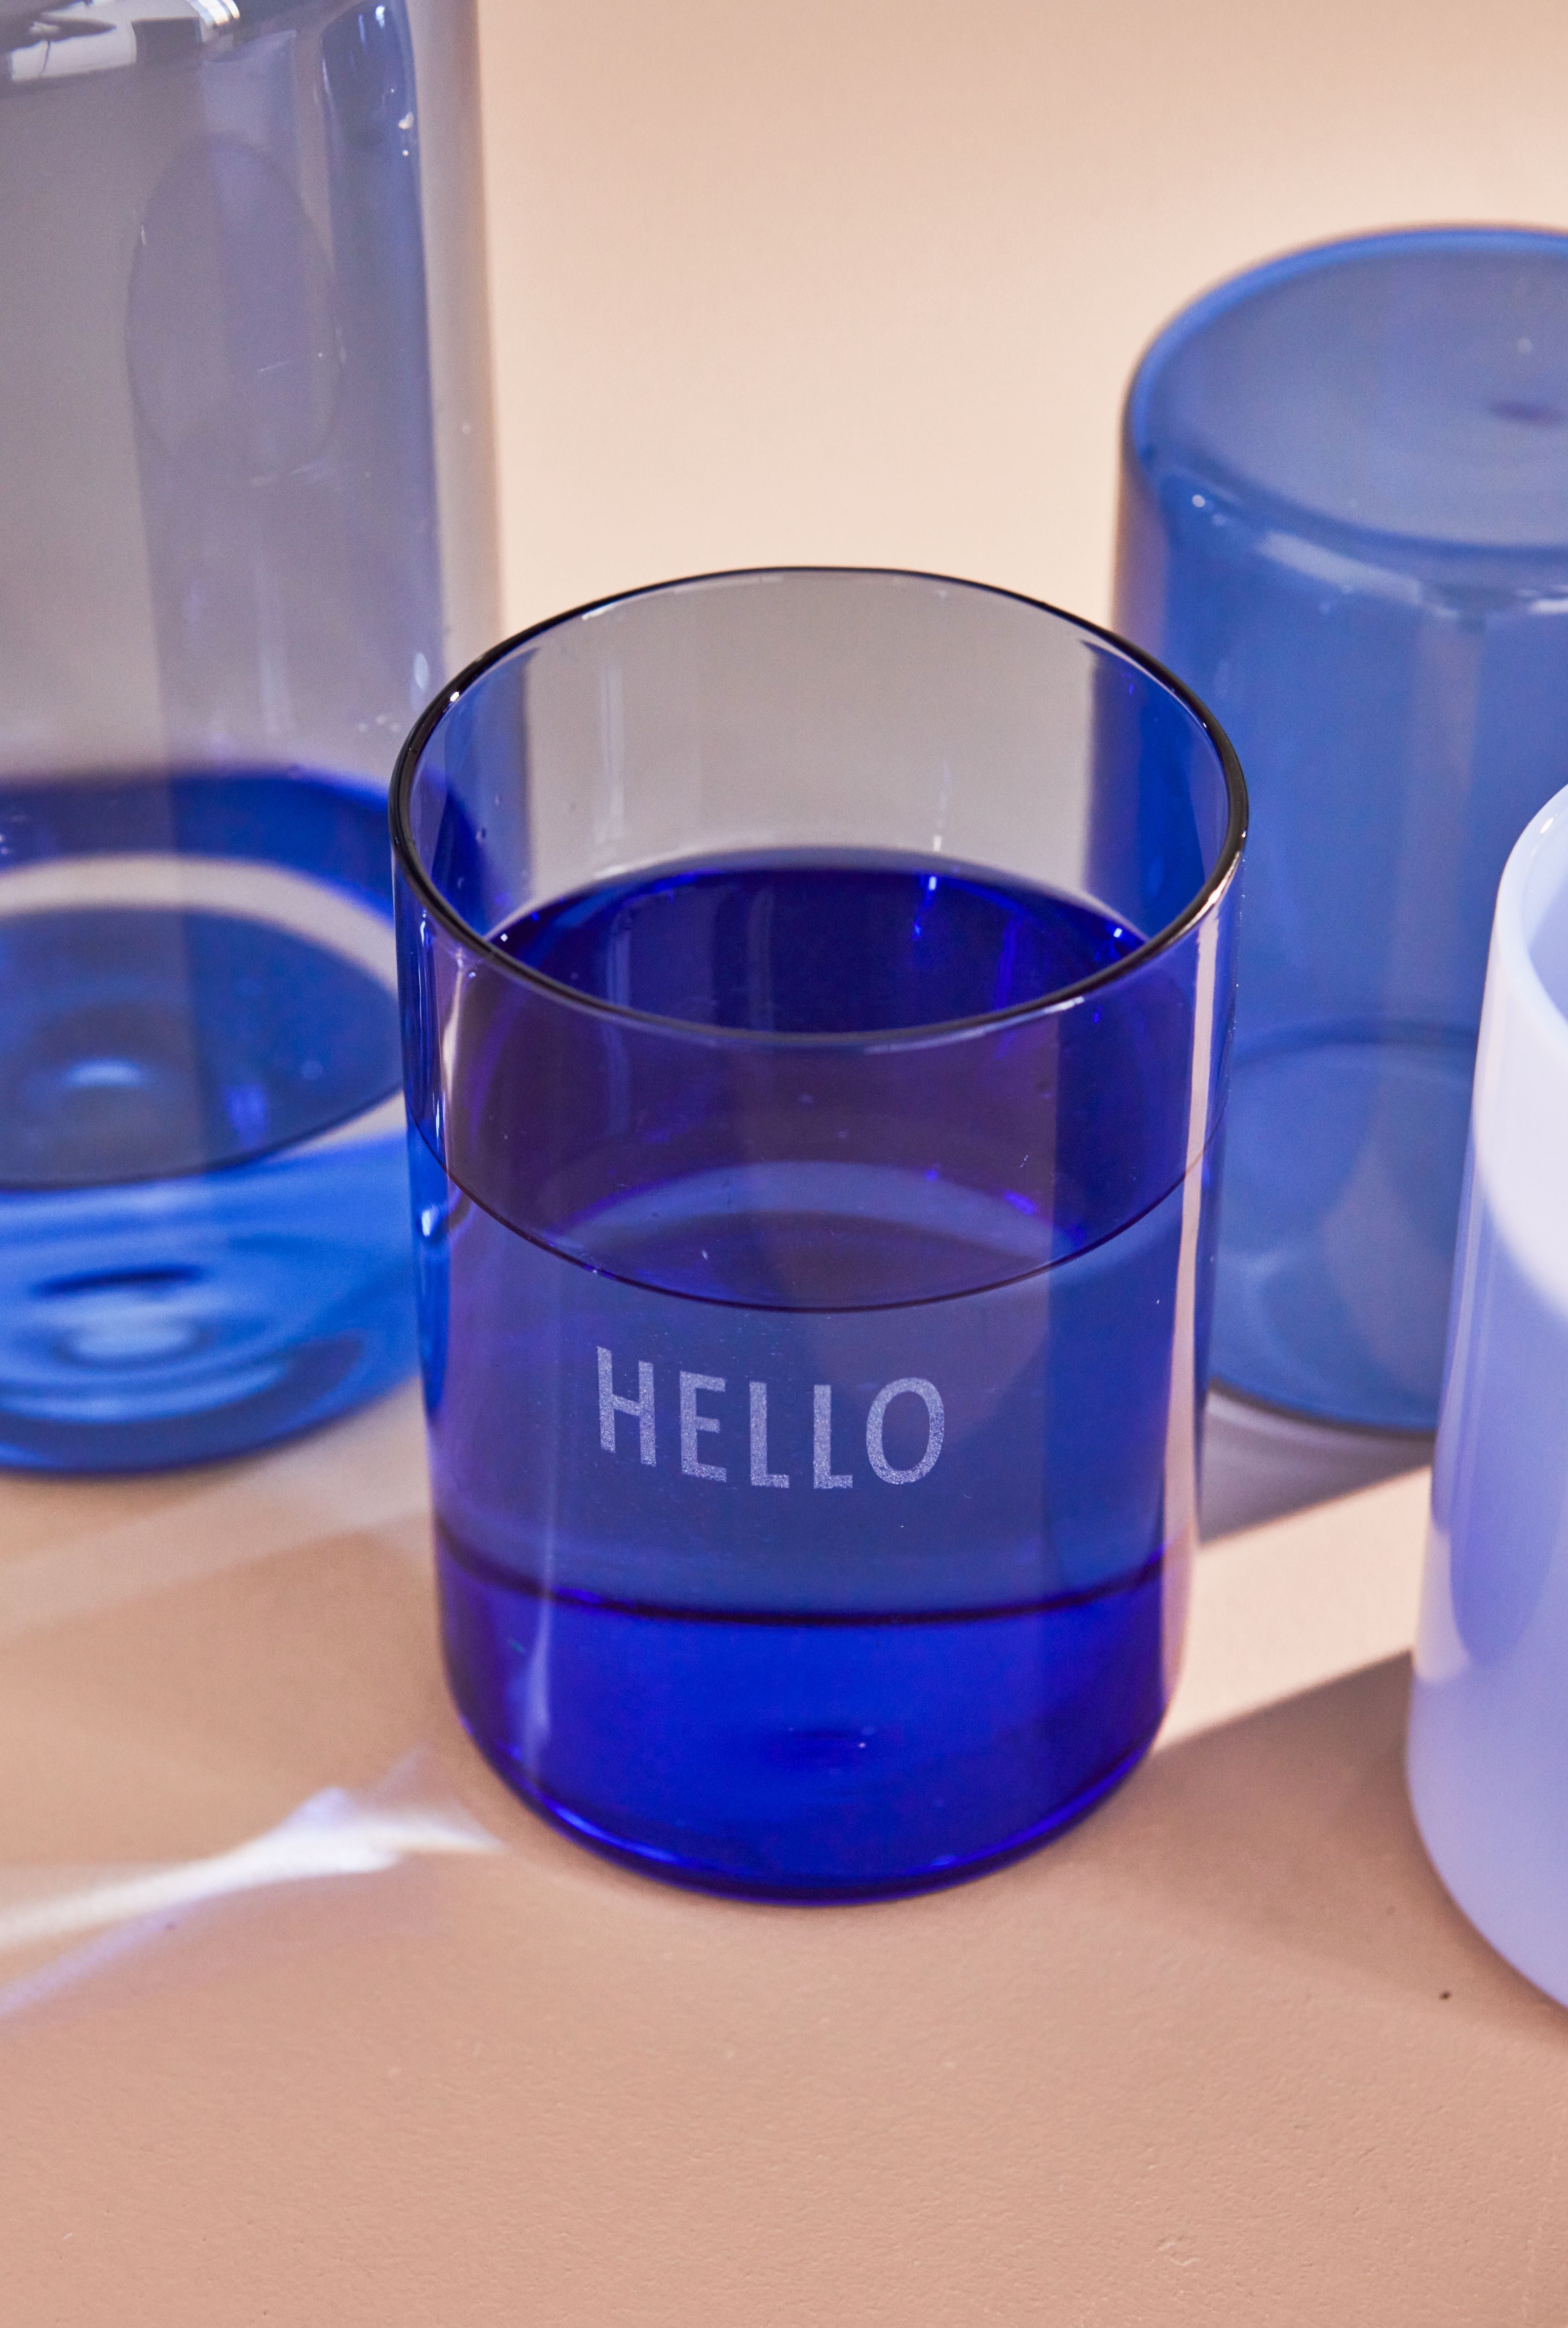 El vaso de bebida favorito de la carta de diseño hola, azul